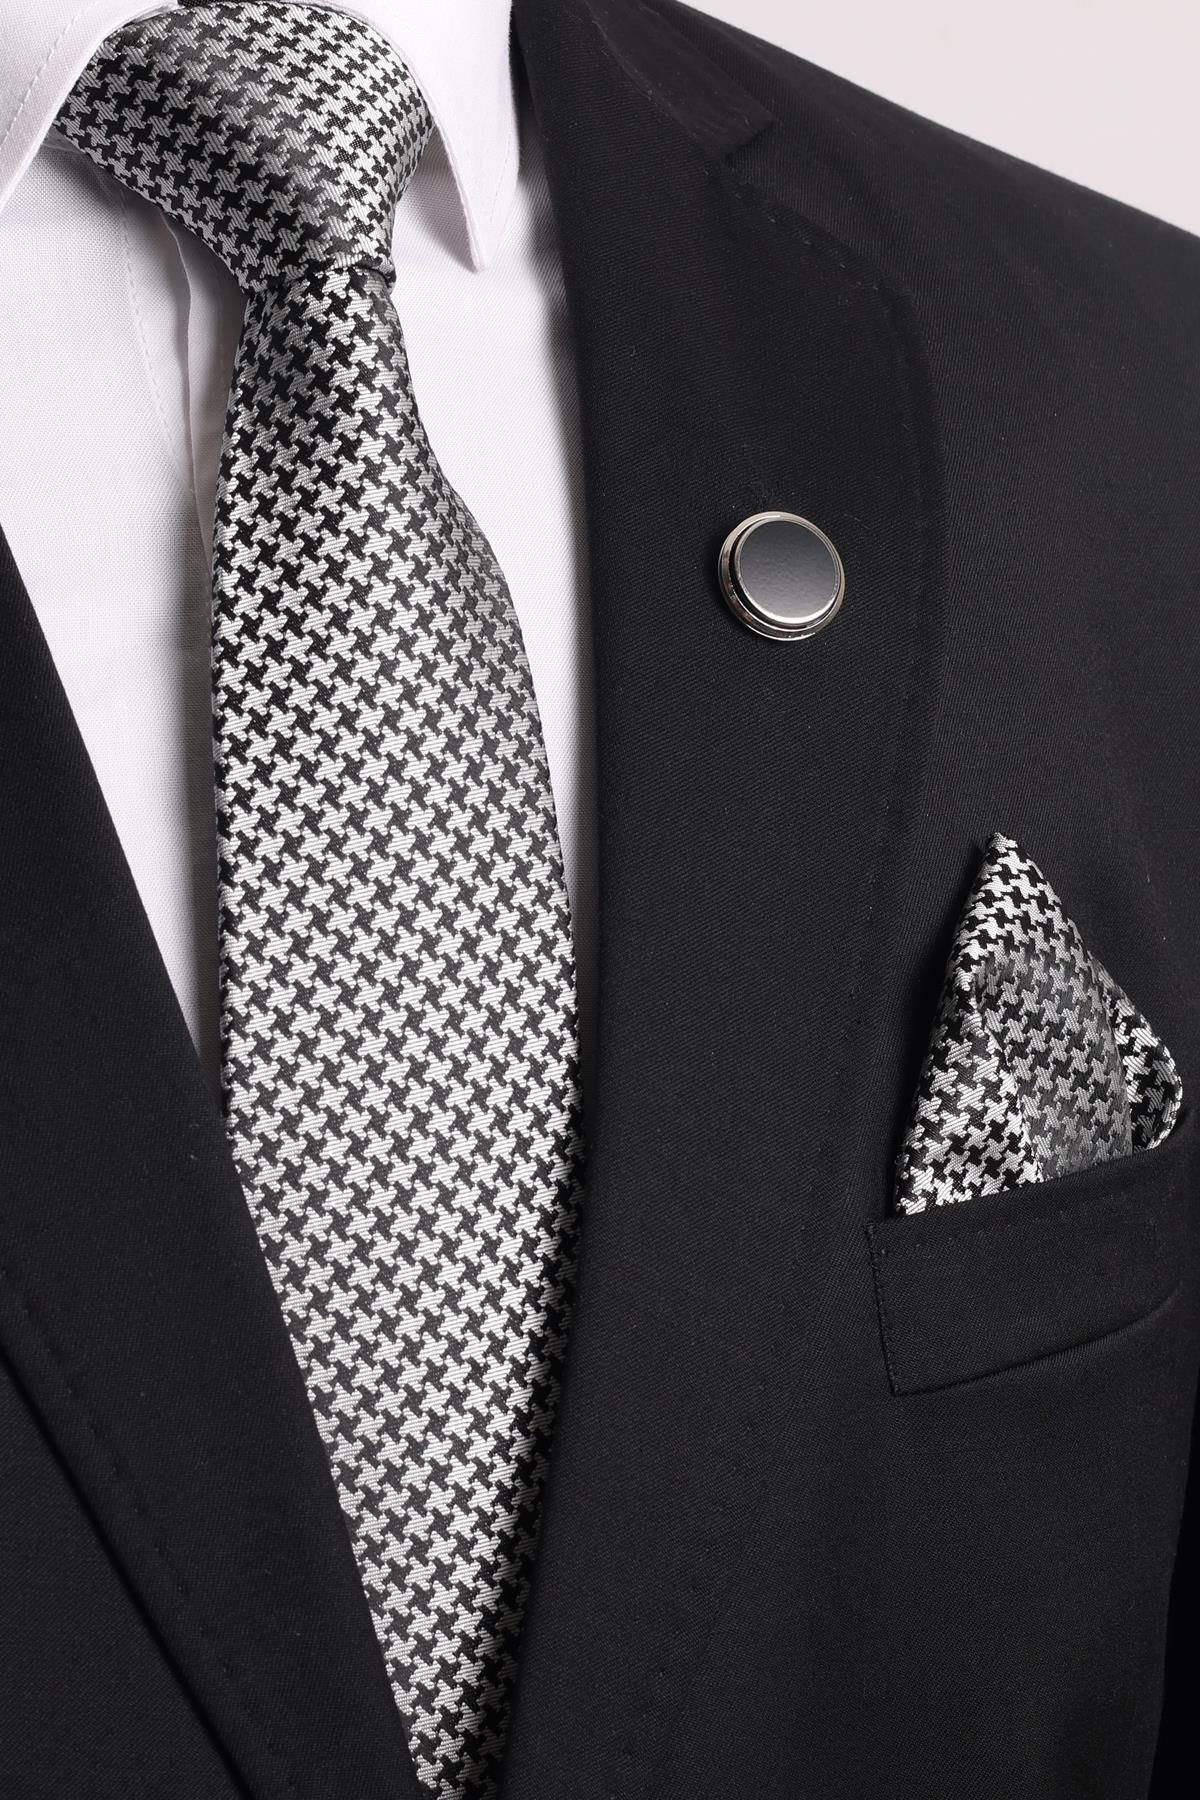 Esgue 7,5 см Черно-белый узорчатый галстук-носовой платок-брошь Подарочный набор ESG115KRM1047